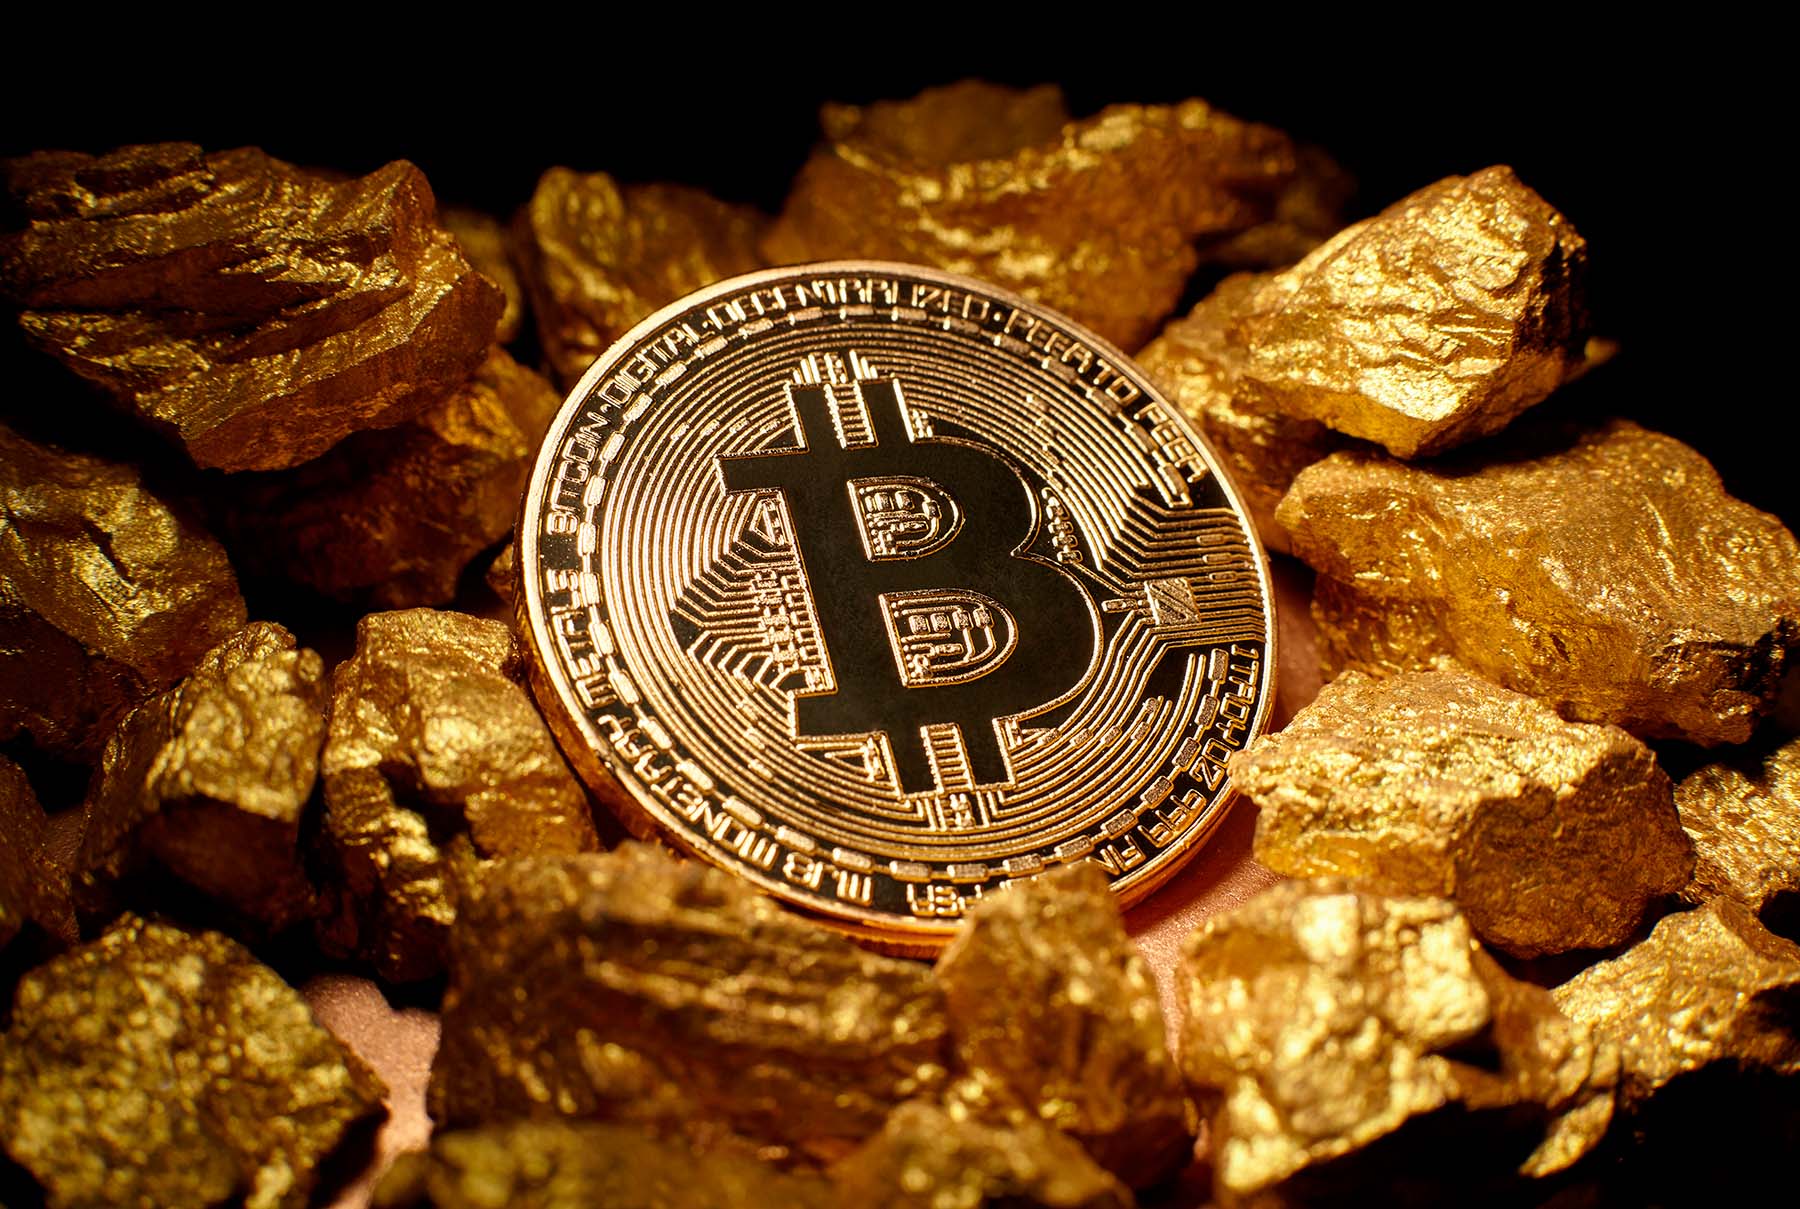 ¿Cómo afecta esto el precio del Bitcoin a futuro?